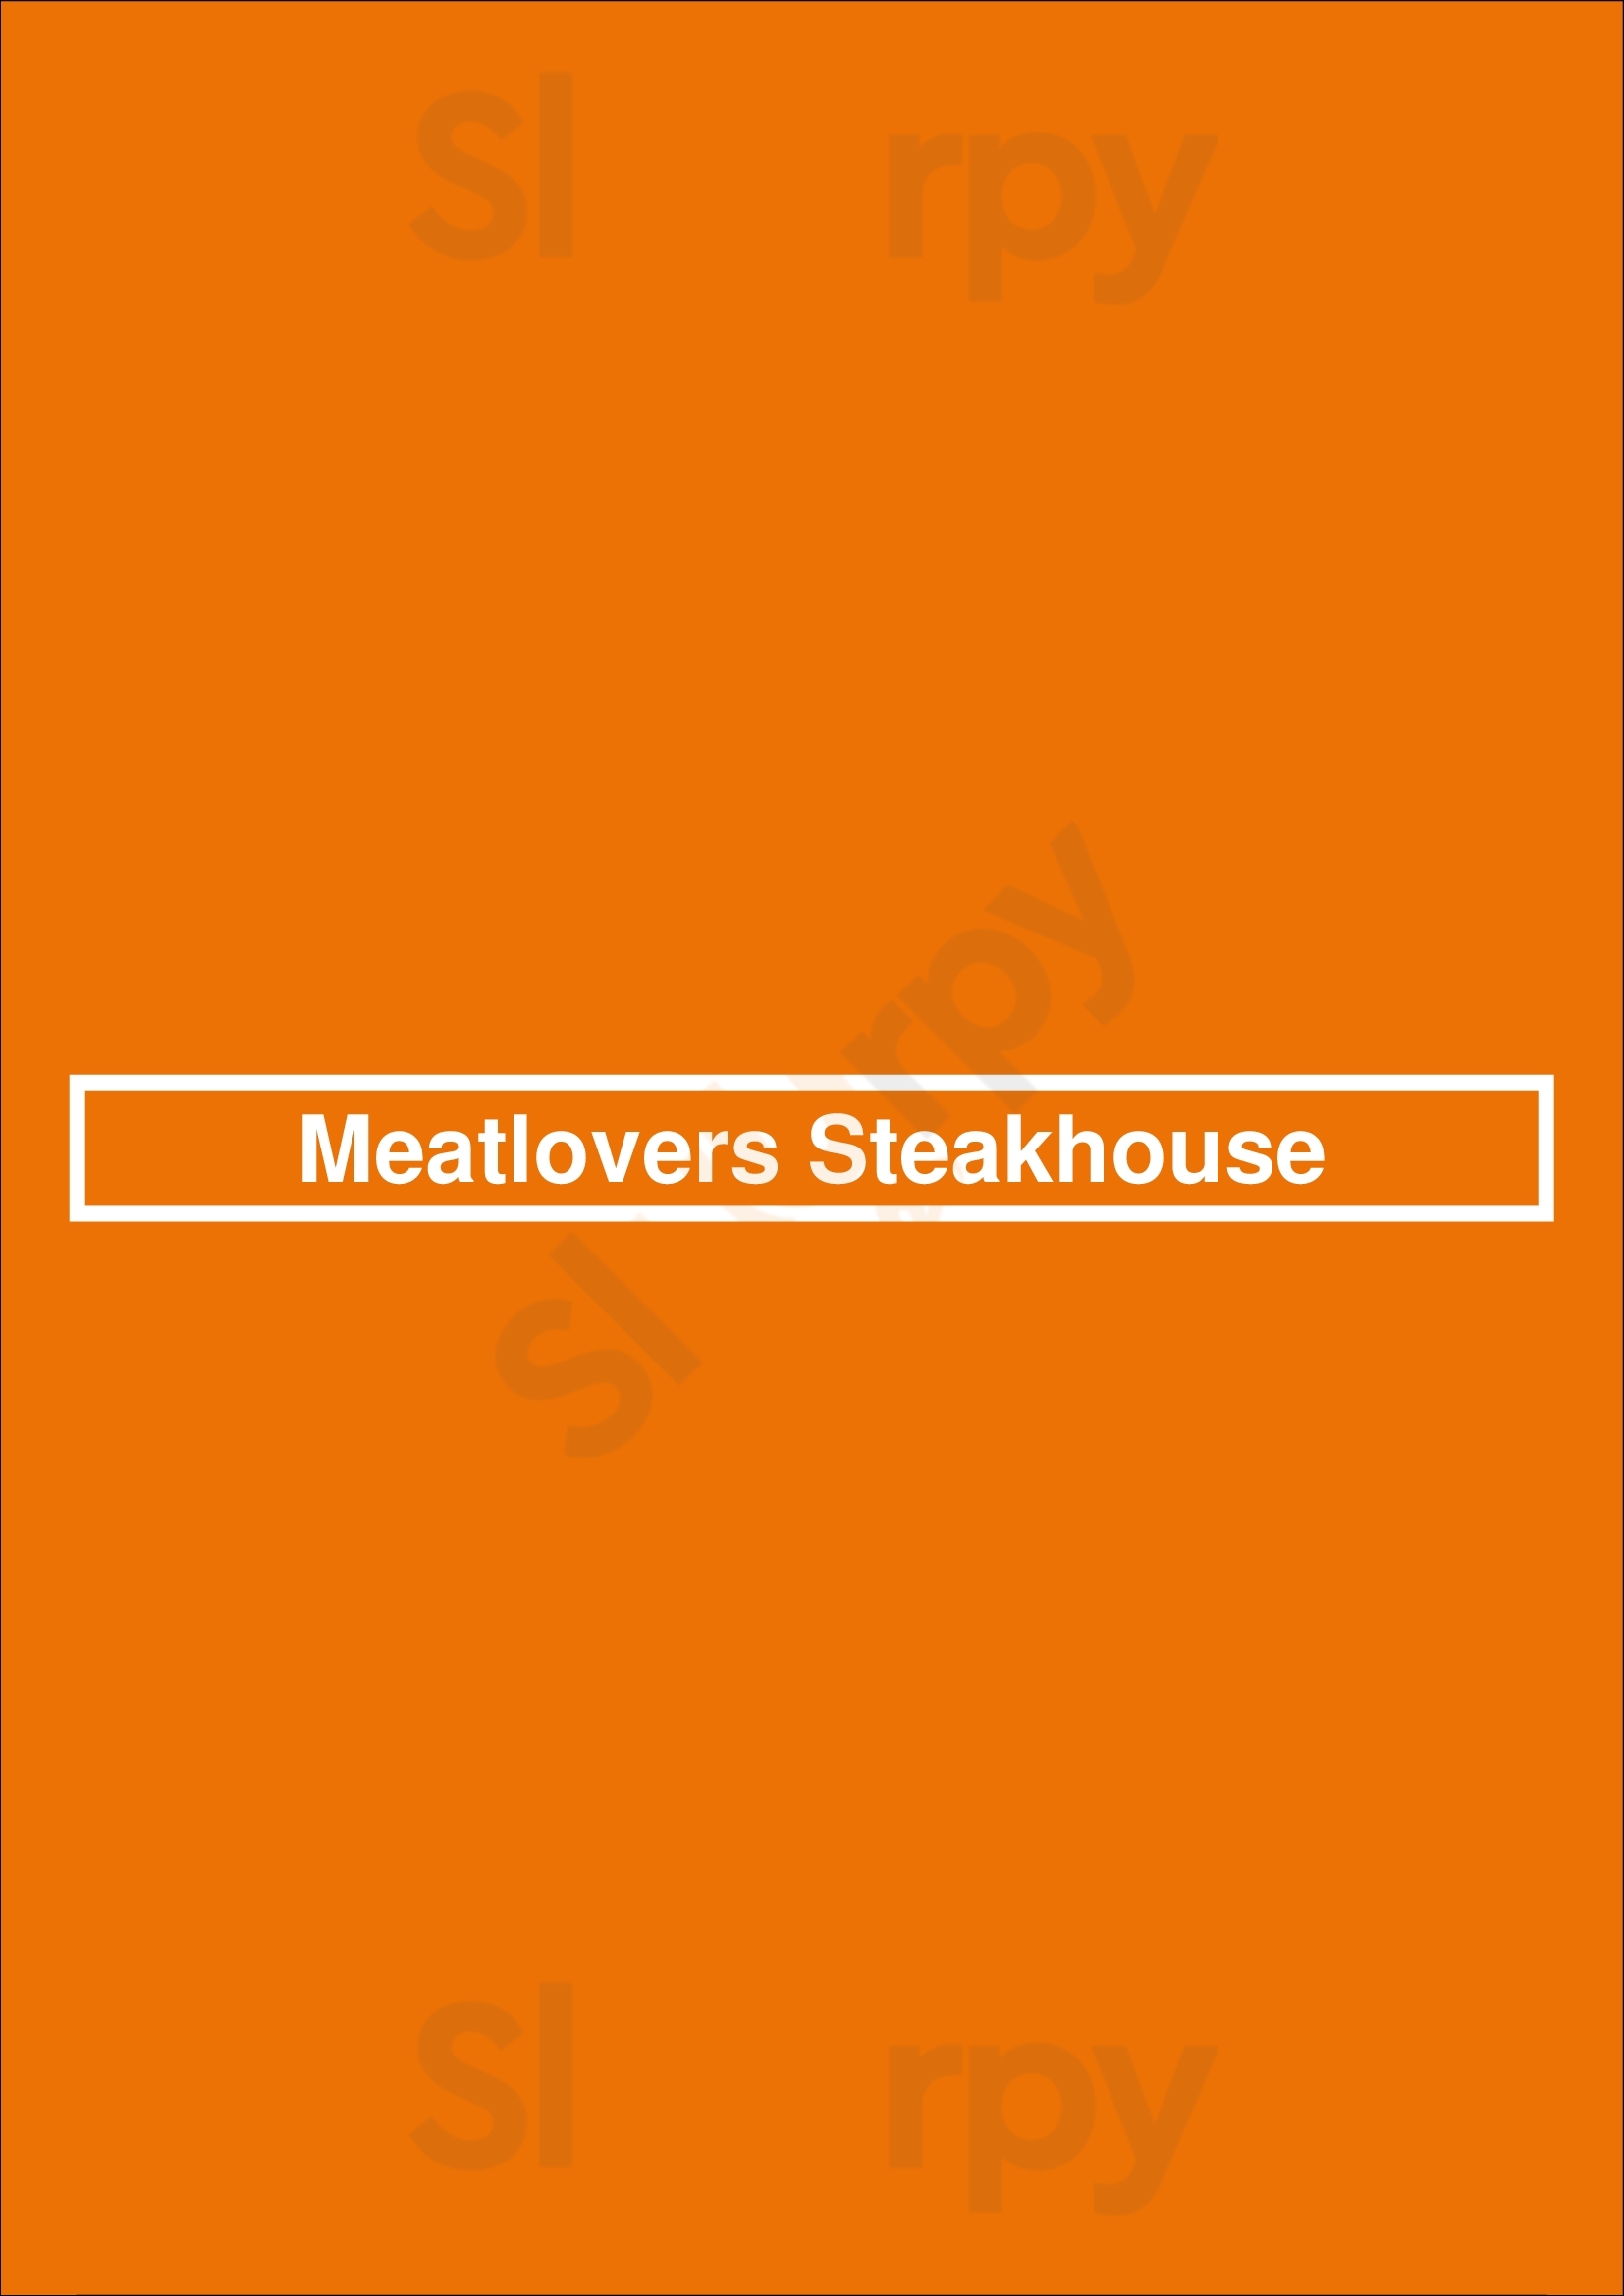 Meatlovers Steakhouse São Paulo Menu - 1